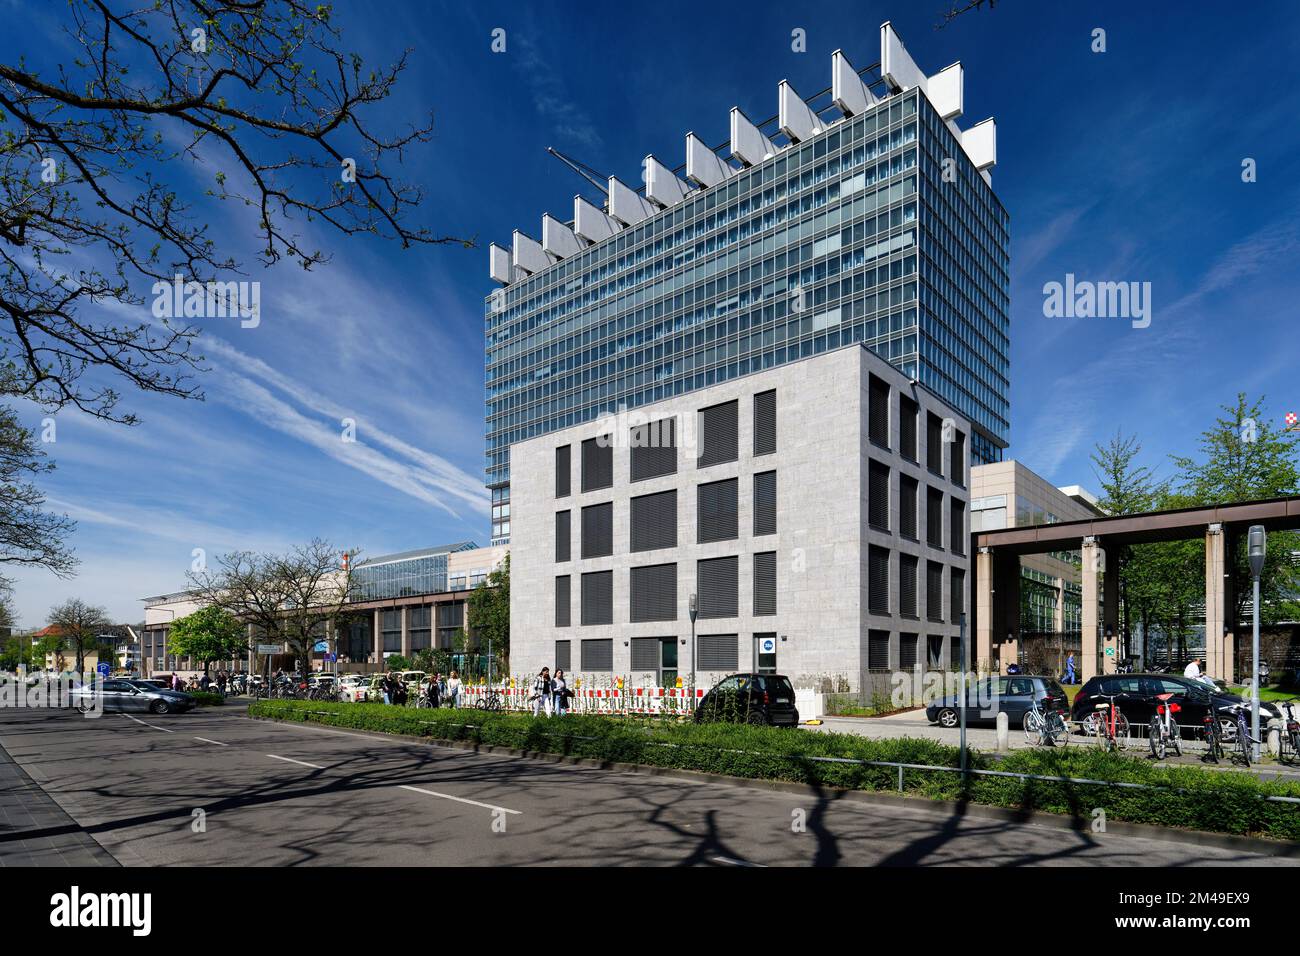 Colonia, Germania, 19 aprile 2022: L'edificio principale dell'ospedale universitario di colonia Foto Stock